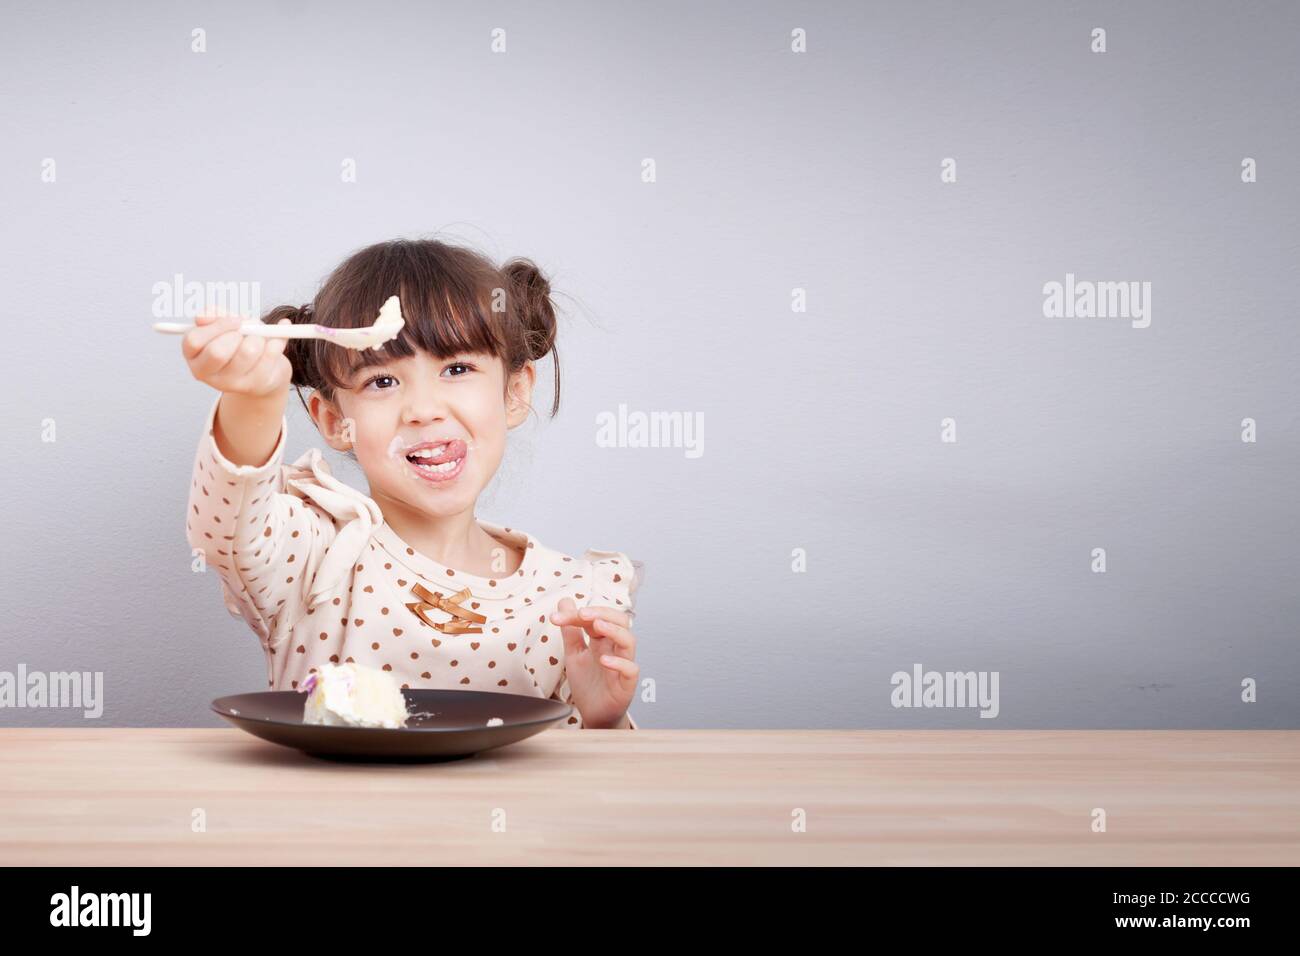 A los niños les gusta comer concepto: Feliz pequeña y linda chica de raza mixta disfrutar comer pastel con cara sonriente, palillo de lengua con cuchara en su mano Foto de stock